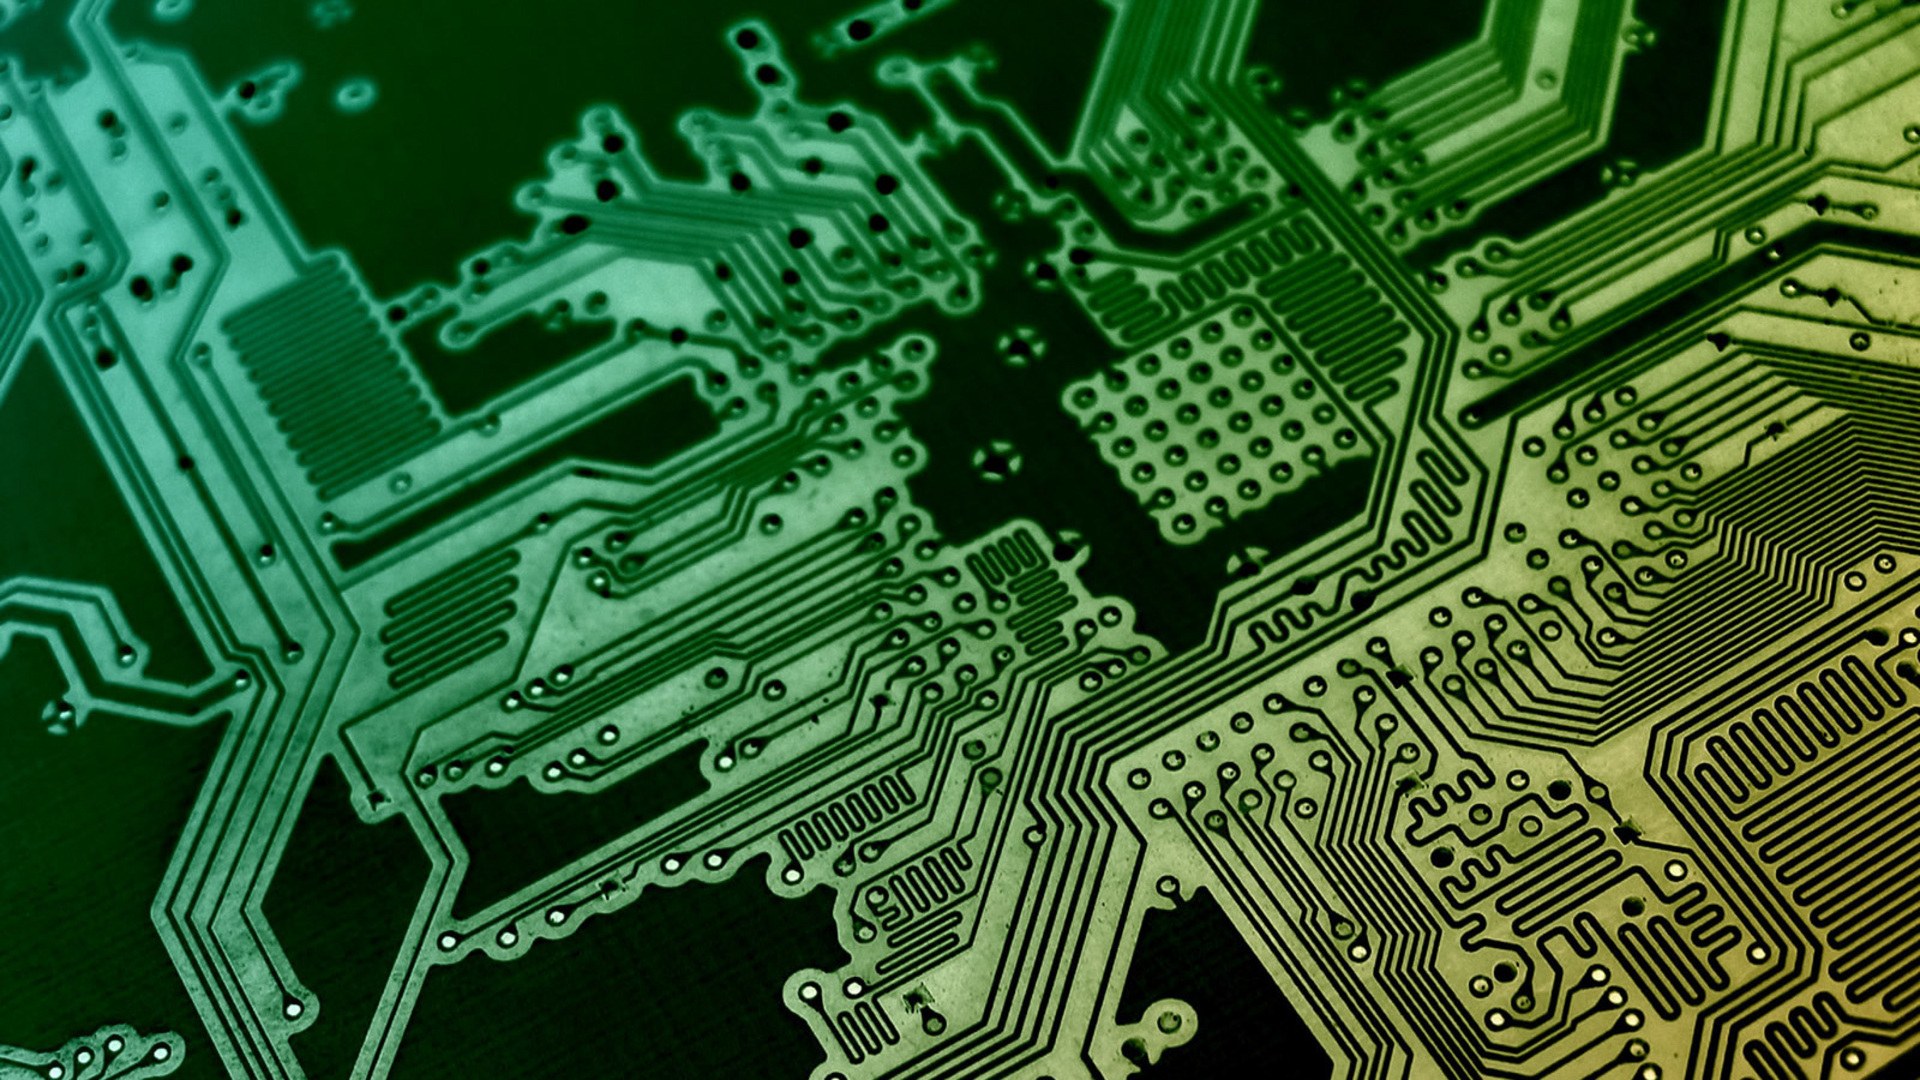 elettronica wallpaper hd,verde,elettronica,ingegneria elettronica,componente elettronico,rete elettrica